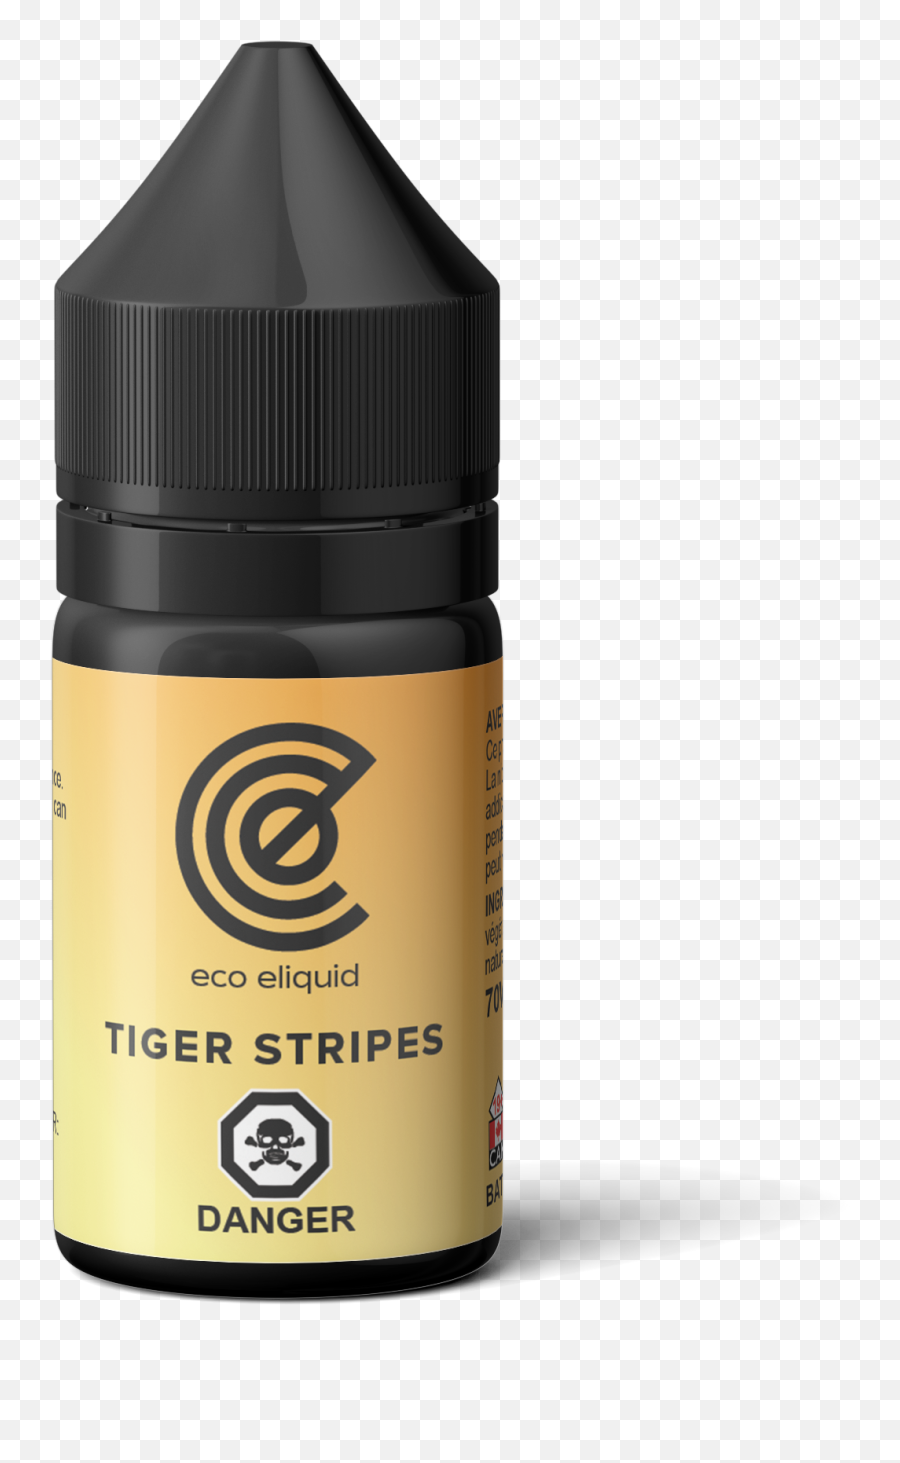 Eco Liquid Tiger Stripes 30ml - Cosmetics Png,Tiger Stripes Png